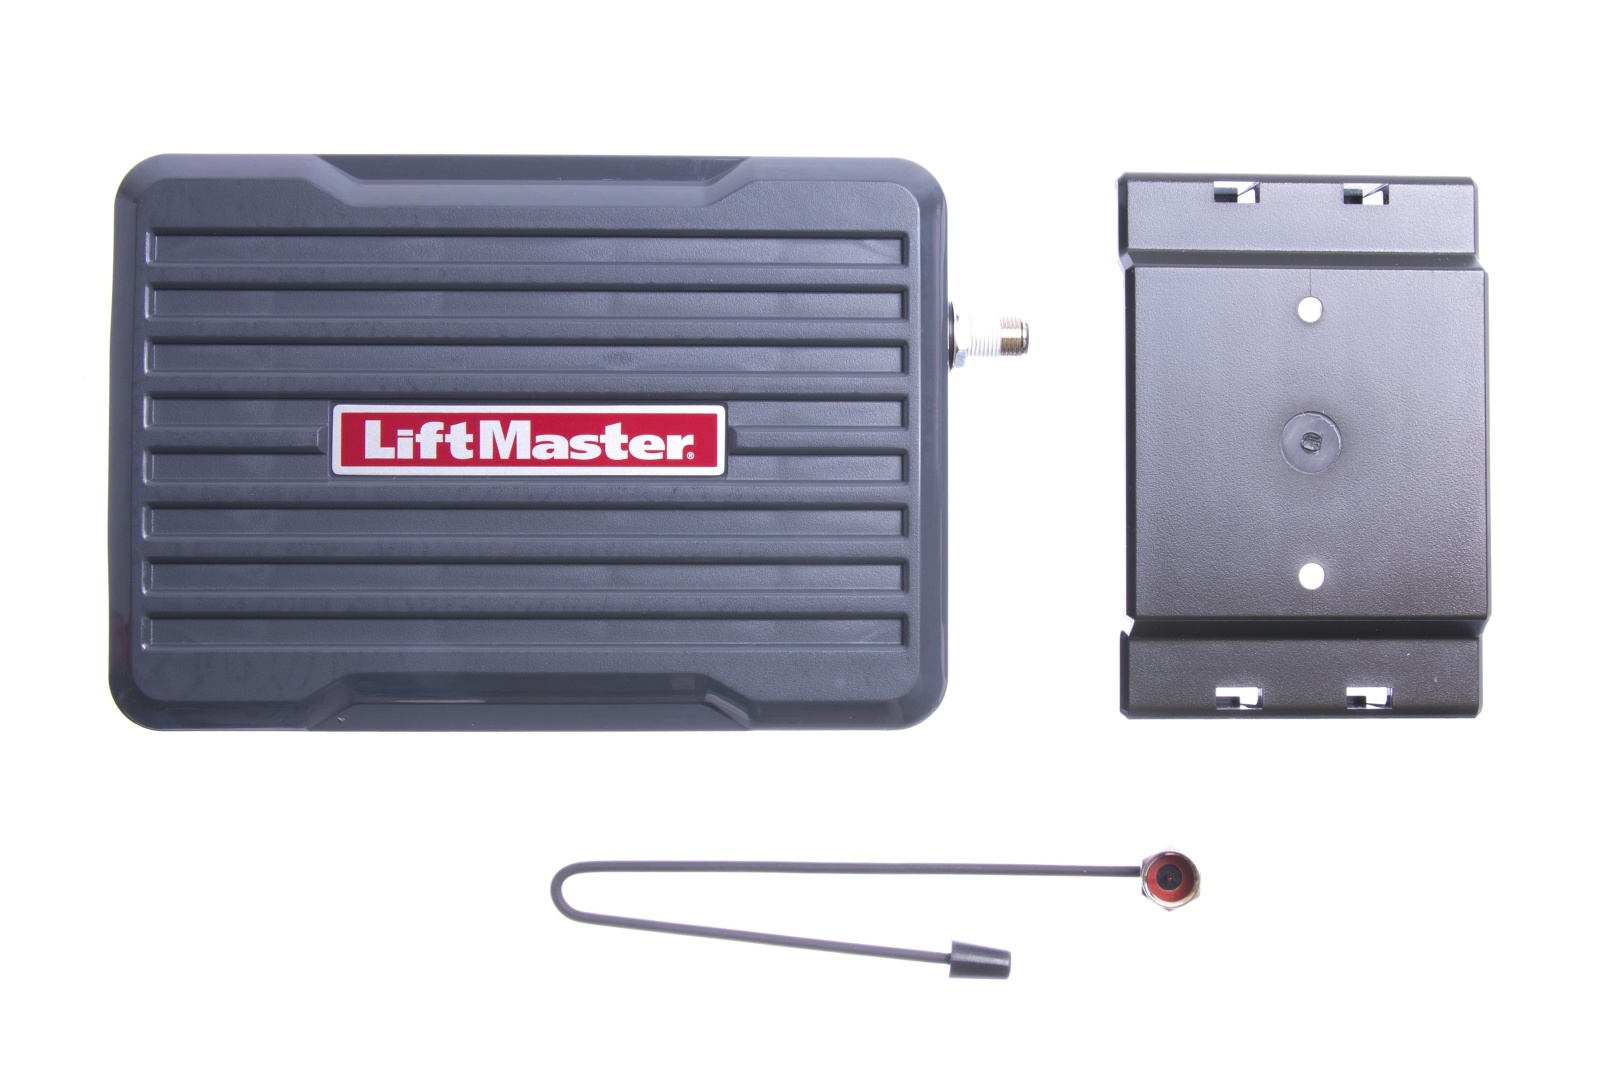 Liftmaster-Chamberlain LiftMaster 860EV externí 3 kanálový přijímač dálkového ovládání EVO